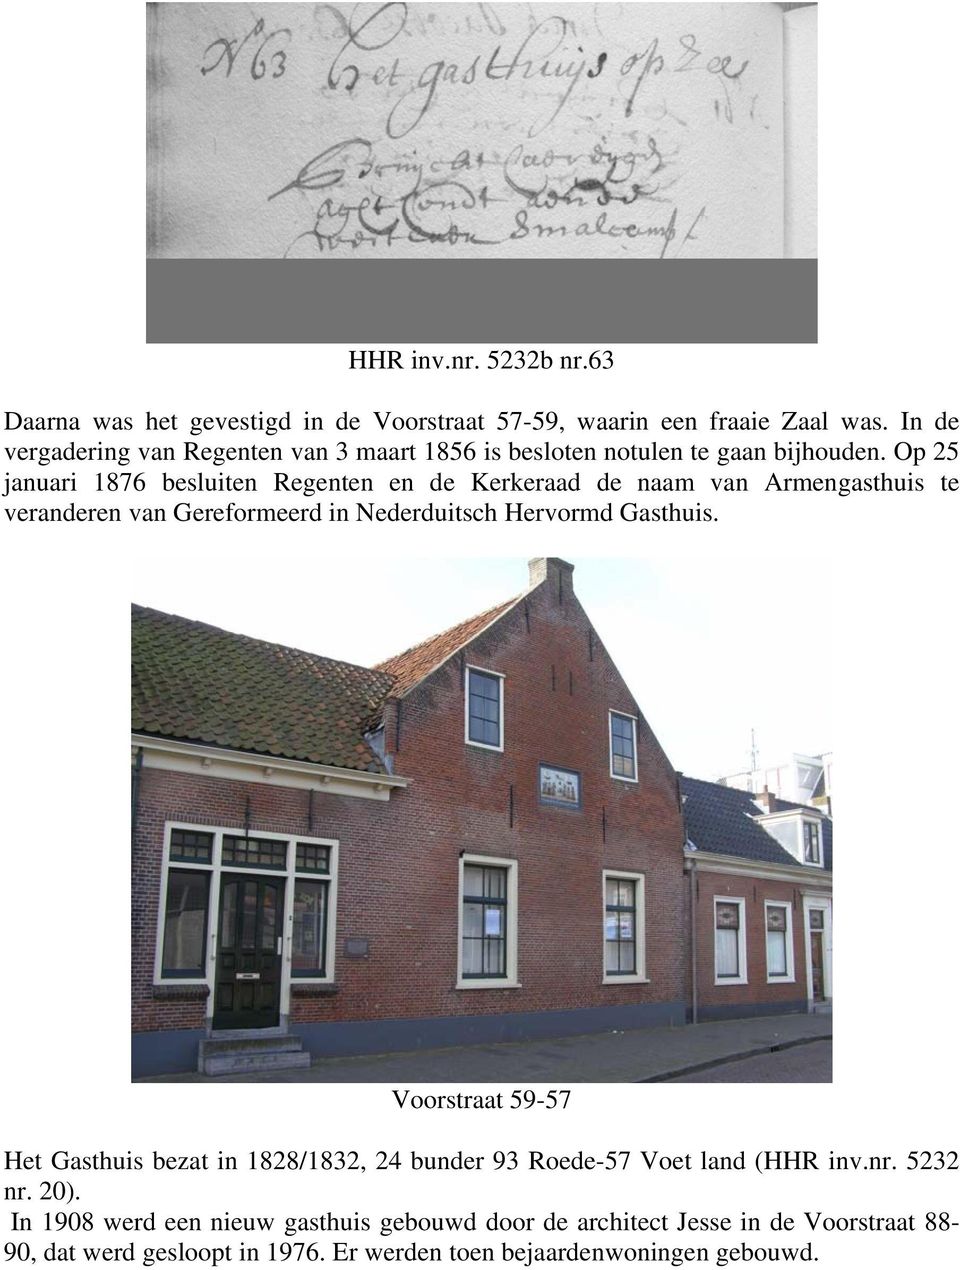 Op 25 januari 1876 besluiten Regenten en de Kerkeraad de naam van Armengasthuis te veranderen van Gereformeerd in Nederduitsch Hervormd Gasthuis.